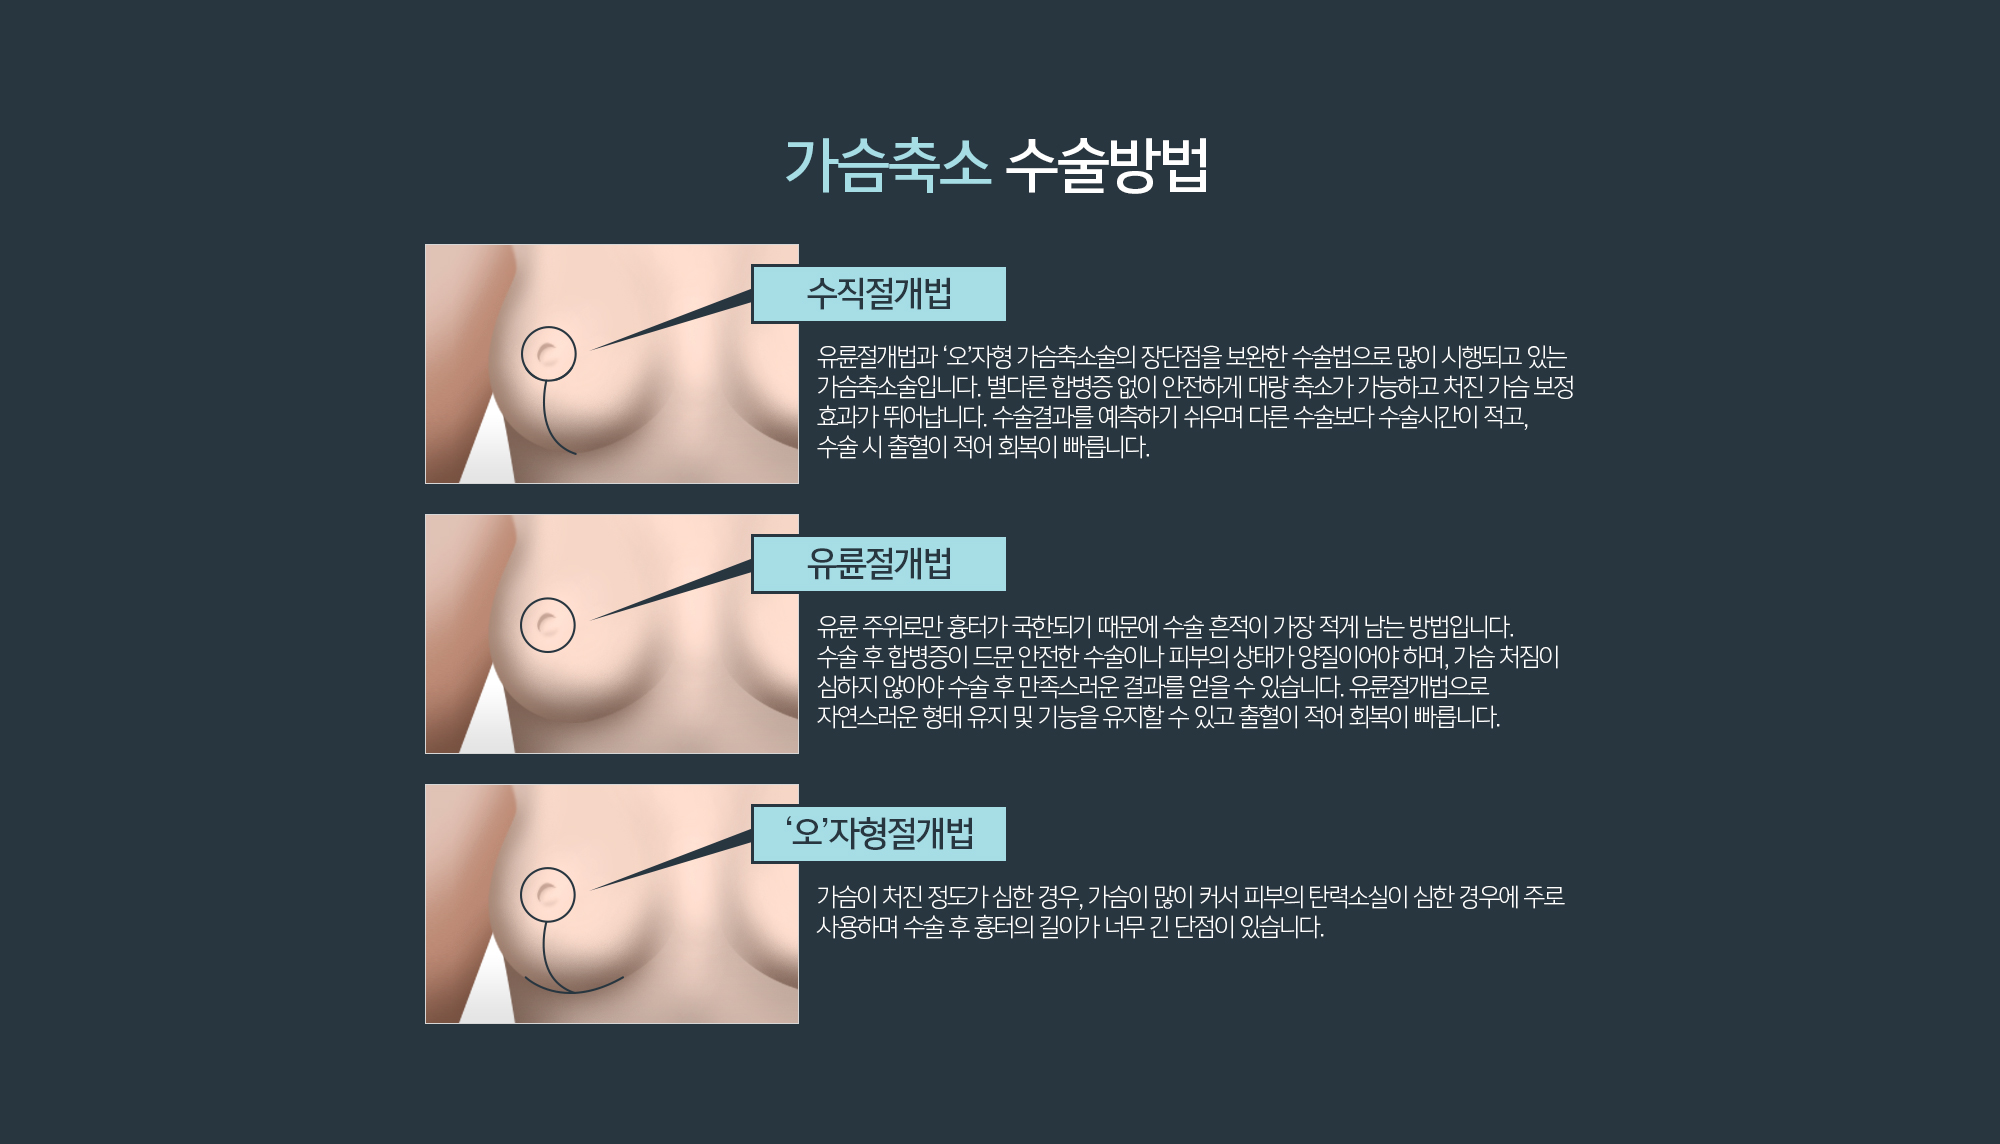 가슴축소 수술방법